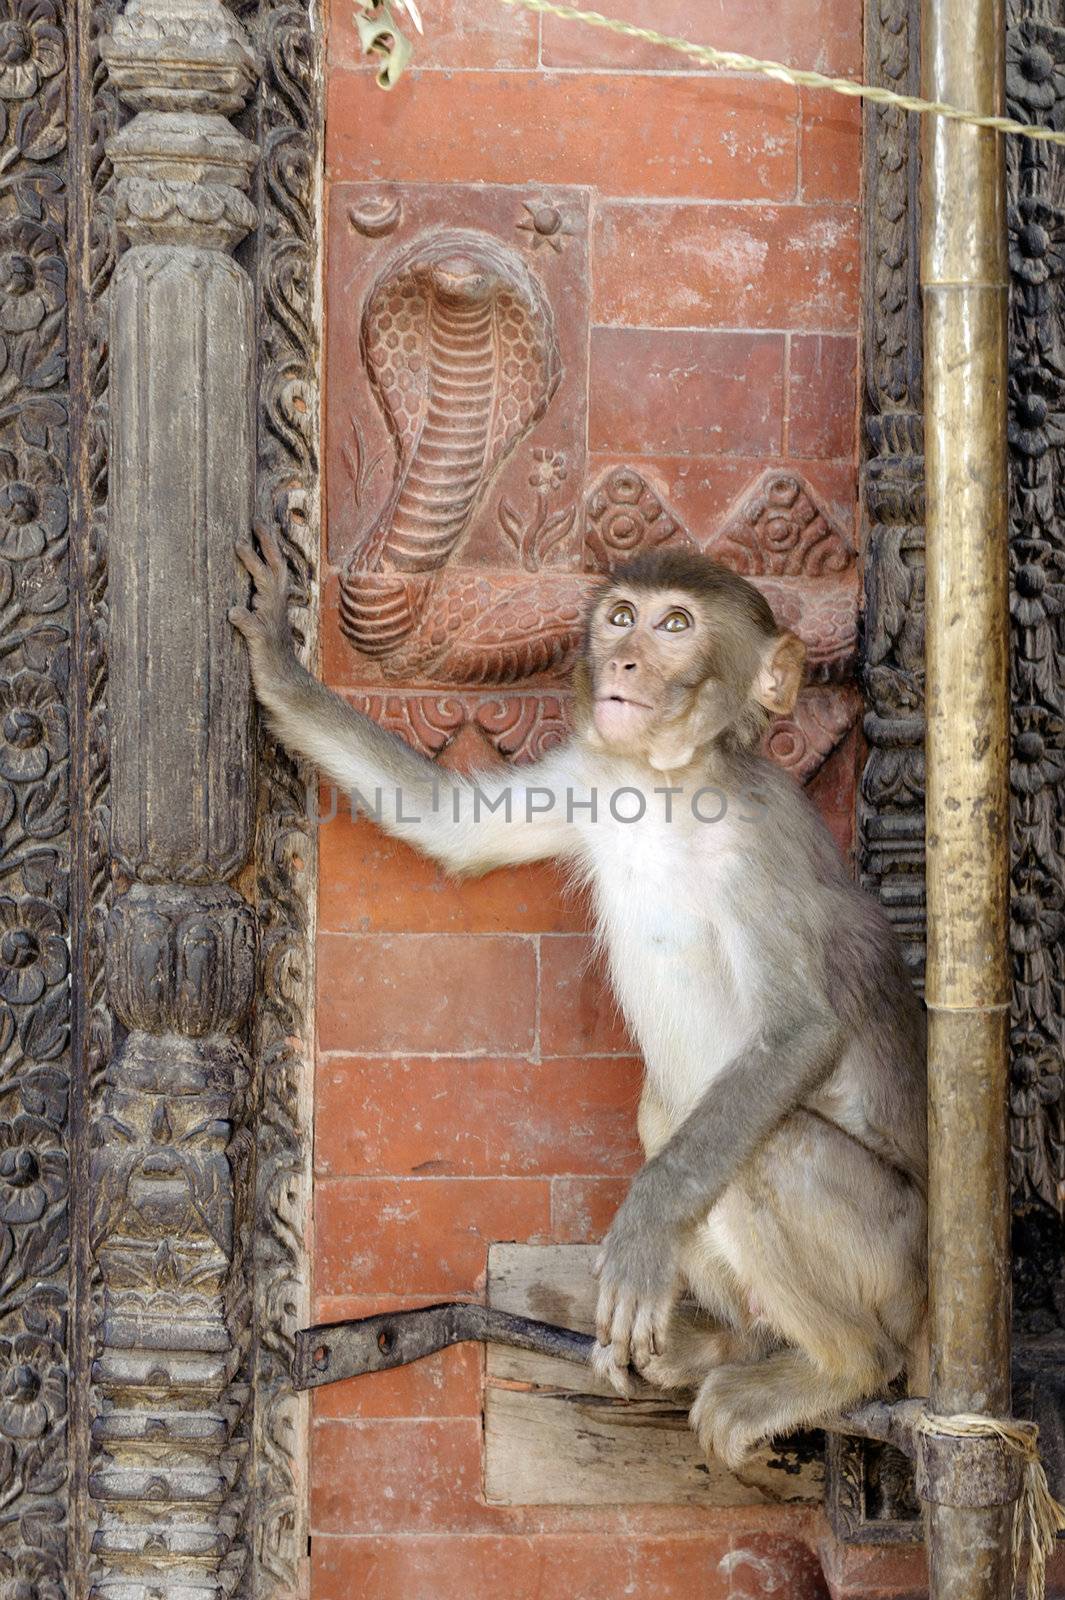 Monkey, Macaca mulatta, sitting on red brick wall around entrance to temple , Swayambhunath, Kathmandu, Nepal